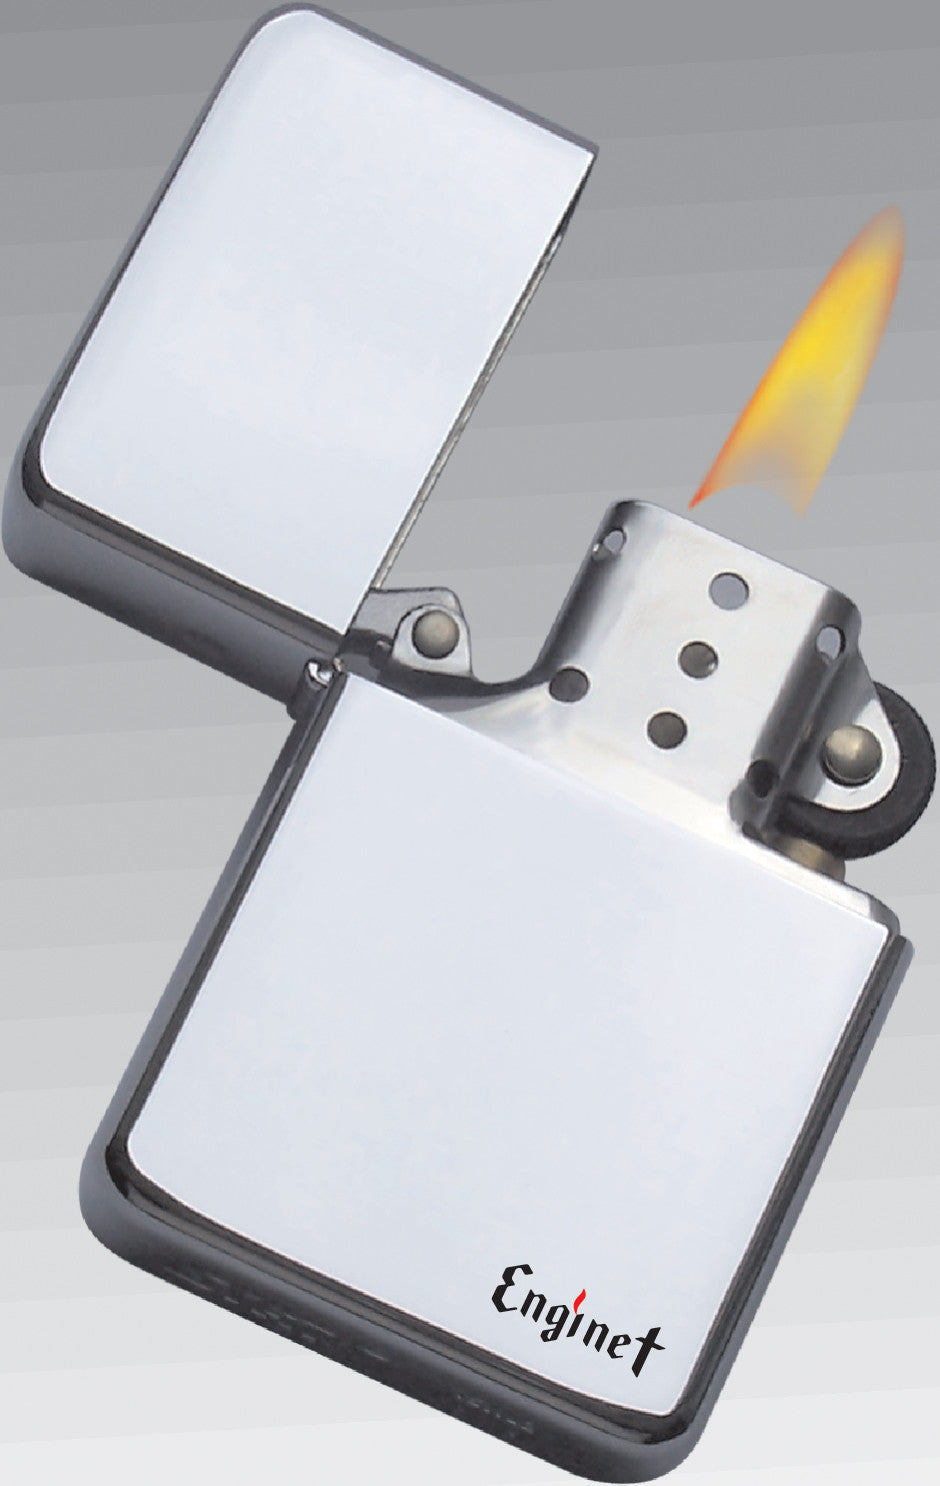 ENGINET® Windproof Oil Pocket Lighter 06-60-410